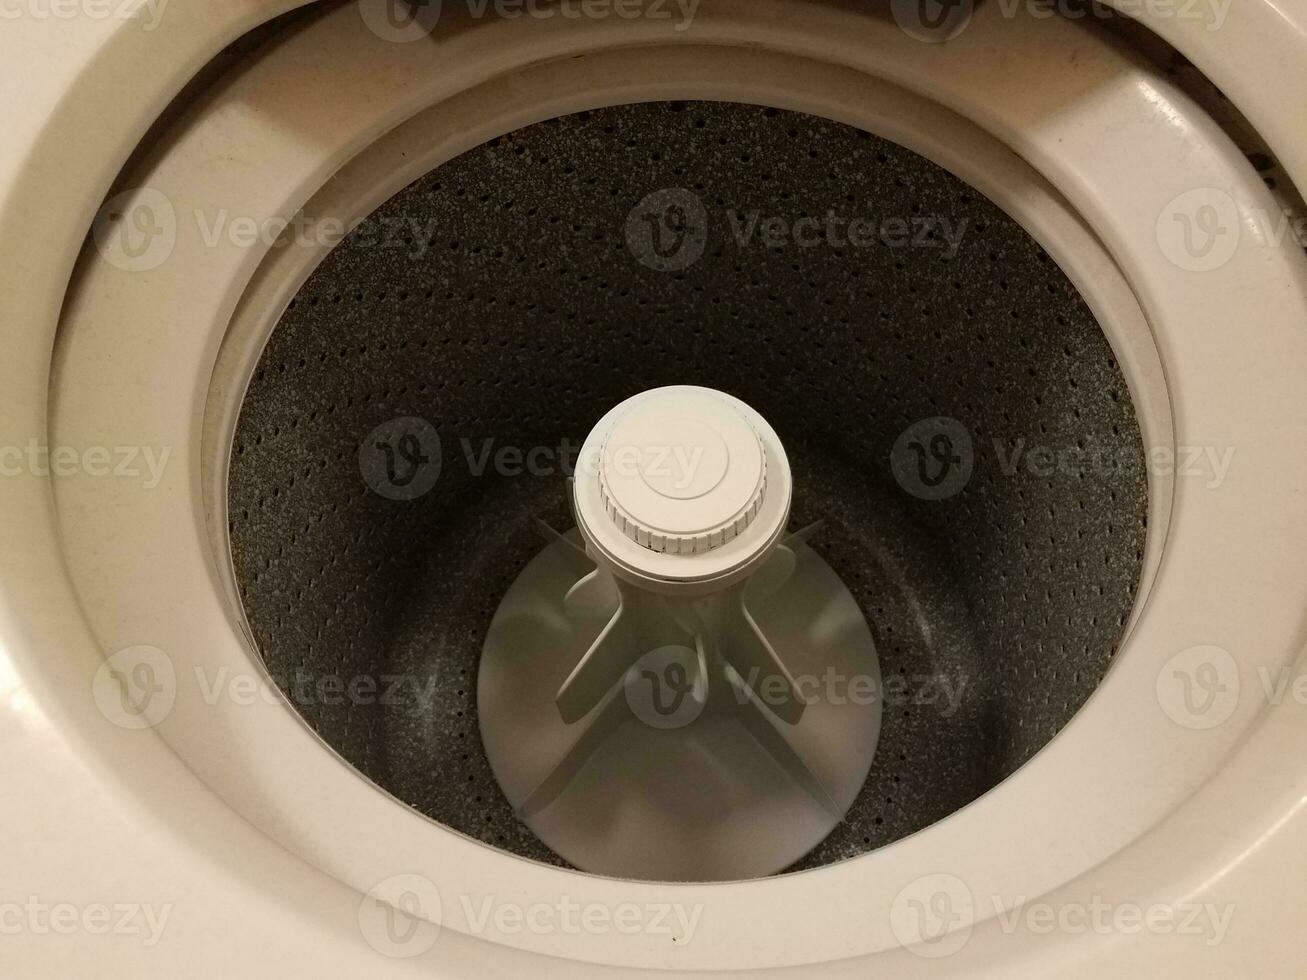 in einem Toplader-Waschmaschinengerät foto